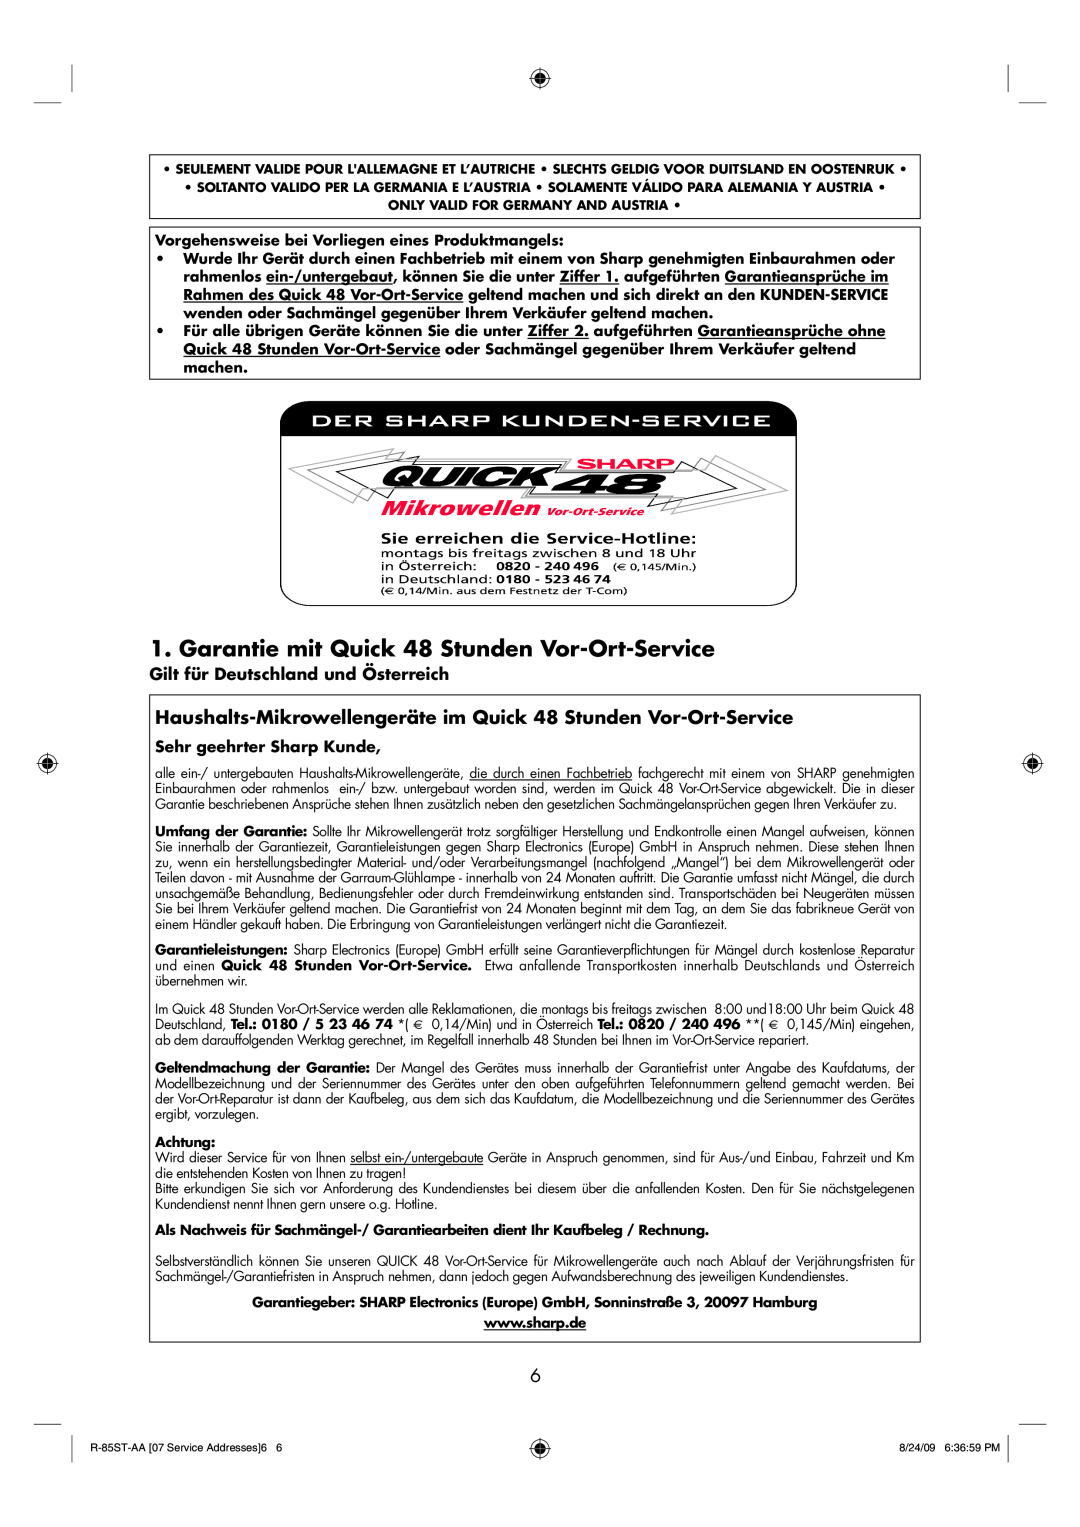 Sharp R-85ST-AA operation manual Garantie mit Quick 48 Stunden Vor-Ort-Service 